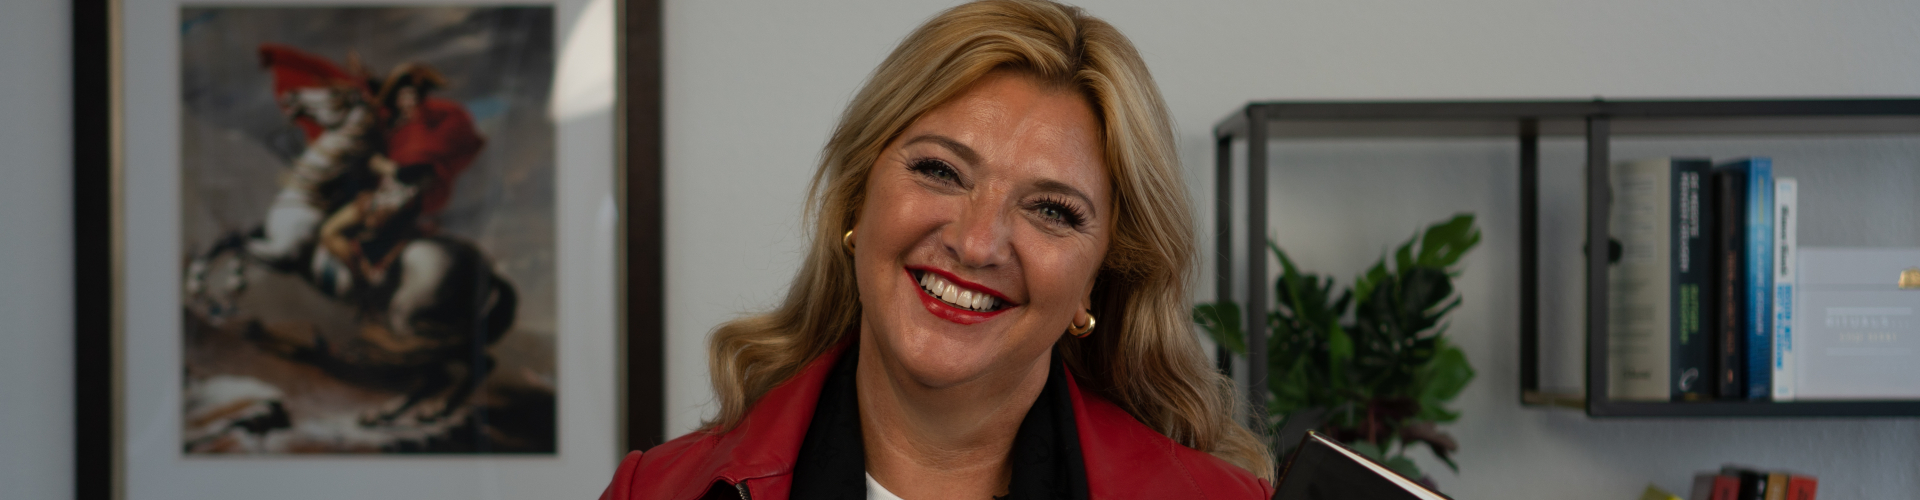 Claudia van Haeften Business Masters Academy